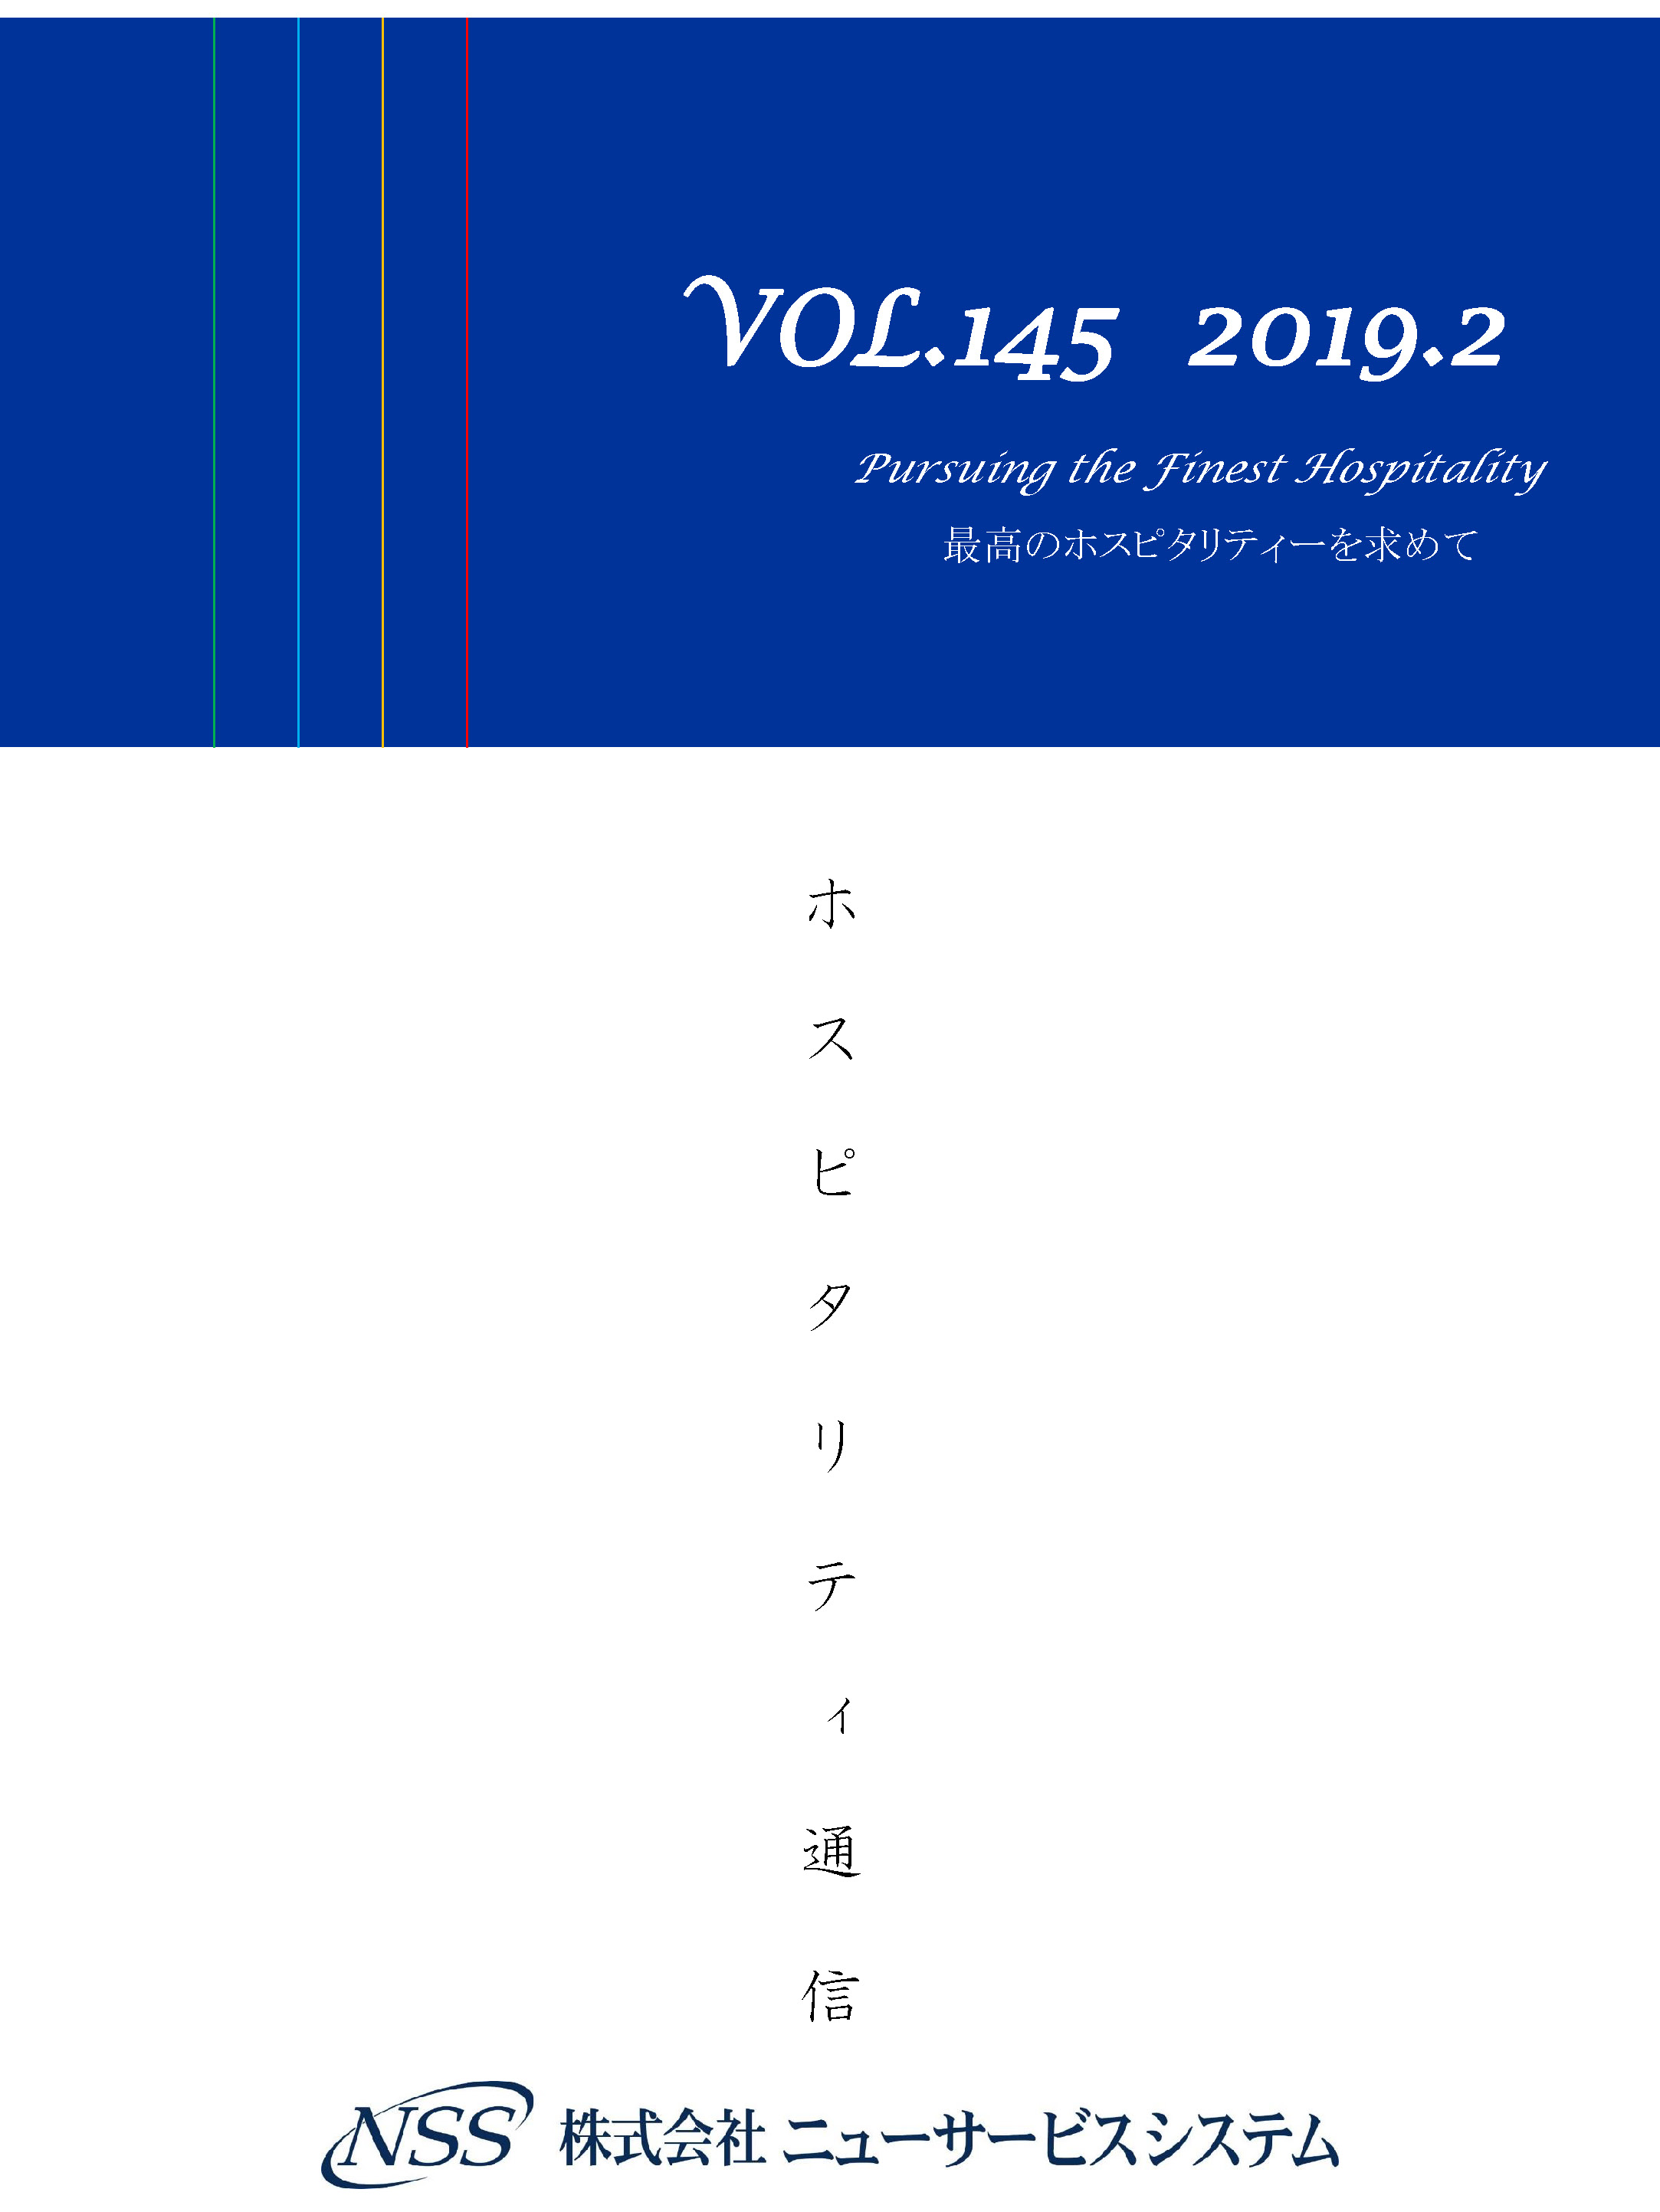 ホスピタリティ通信 vol.145